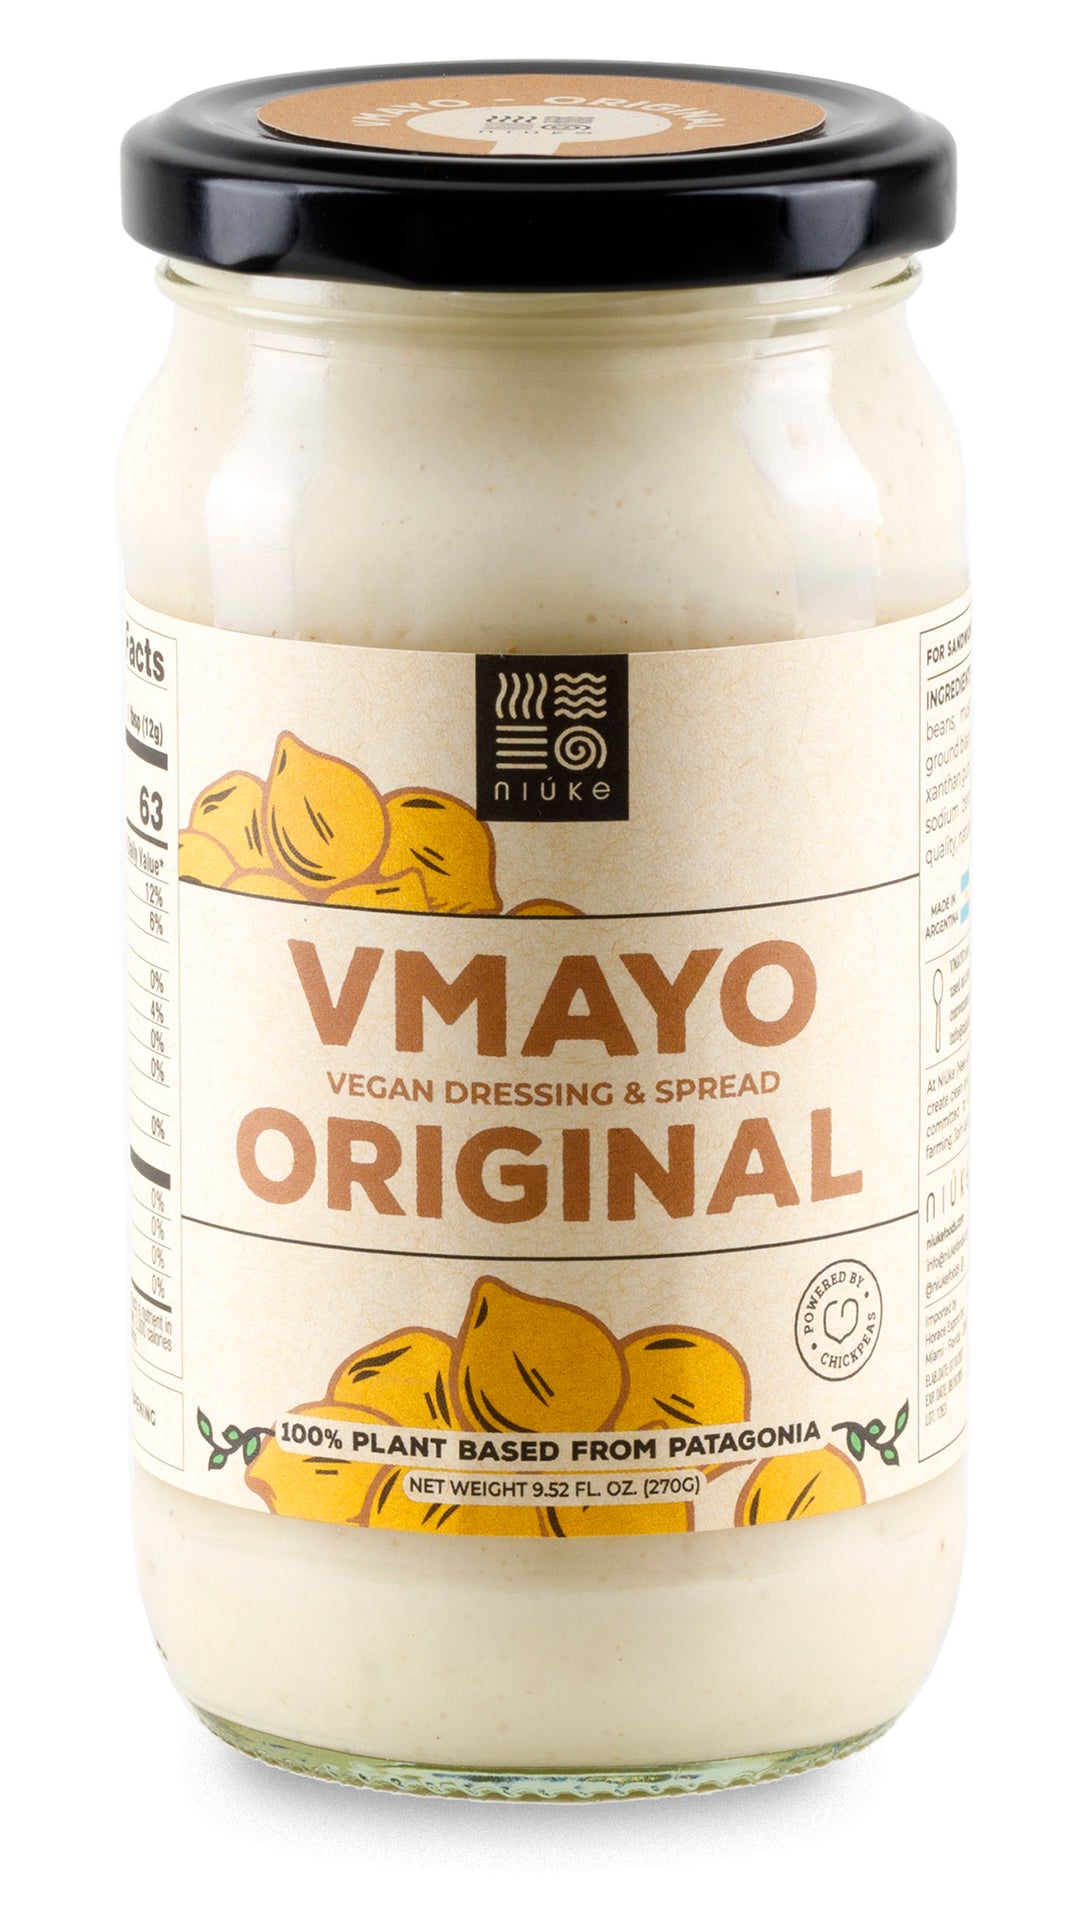 ORIGINAL Vegan Mayo